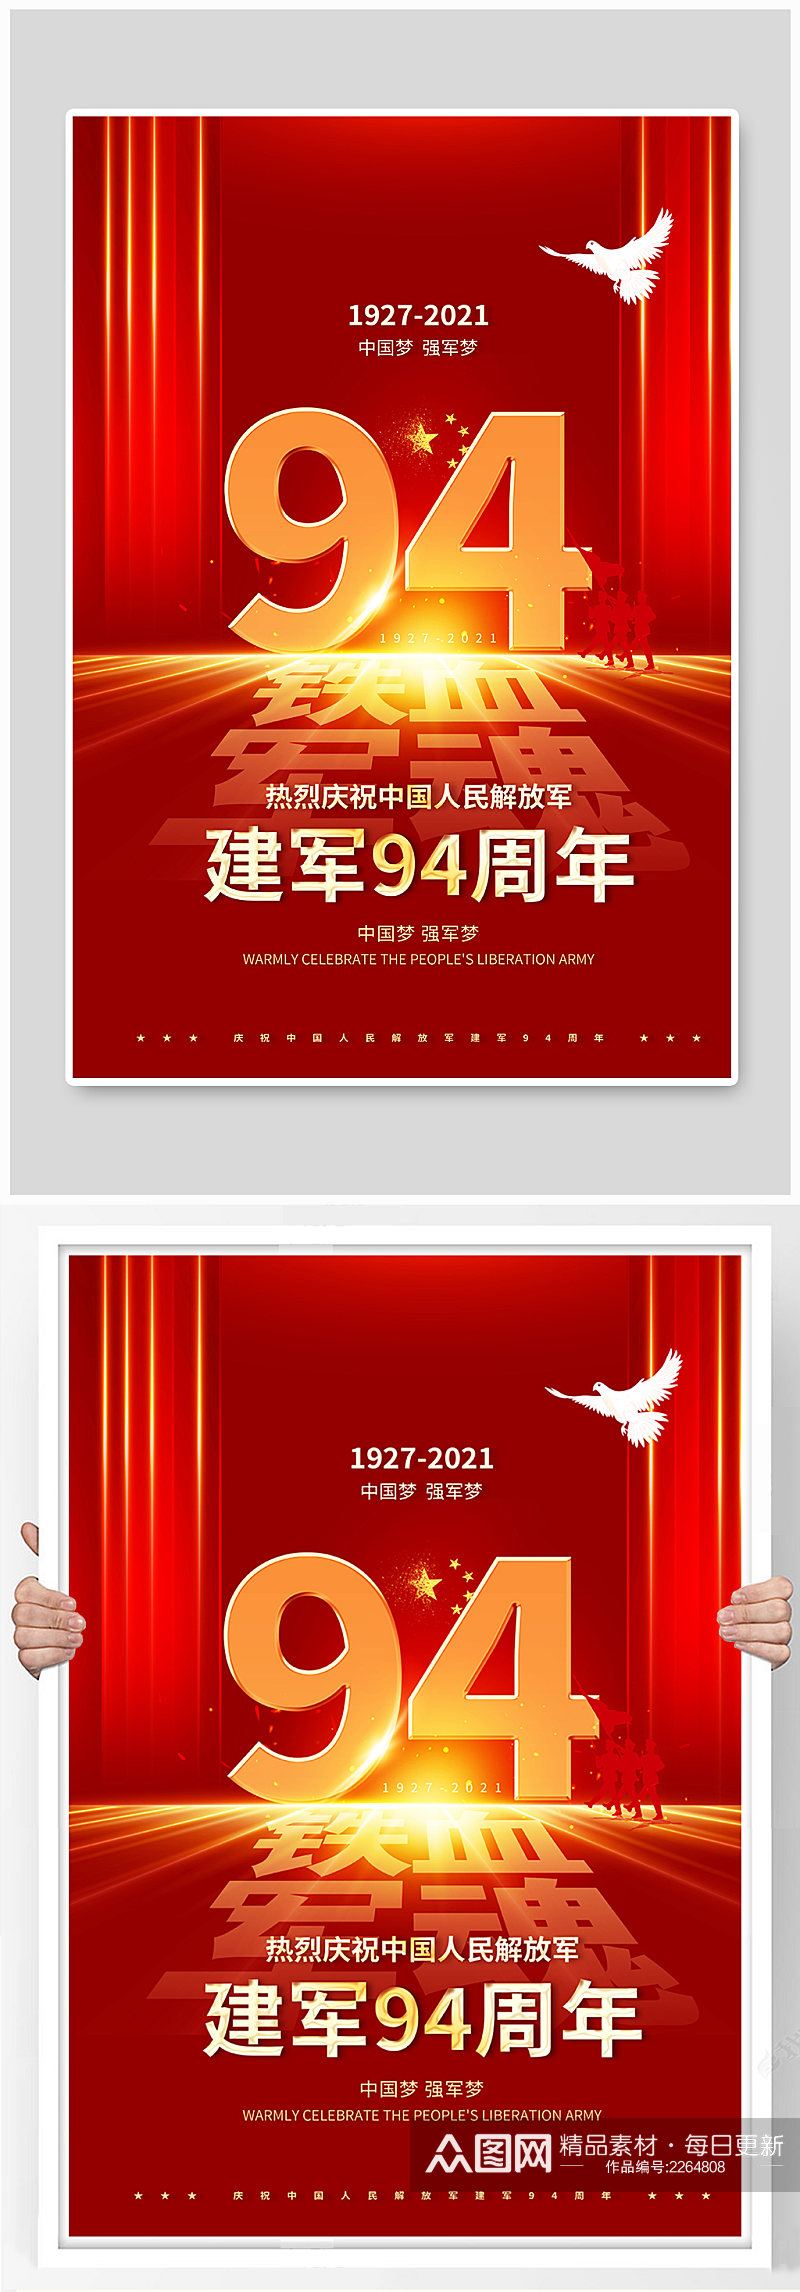 建军94周年红色宣传海报素材